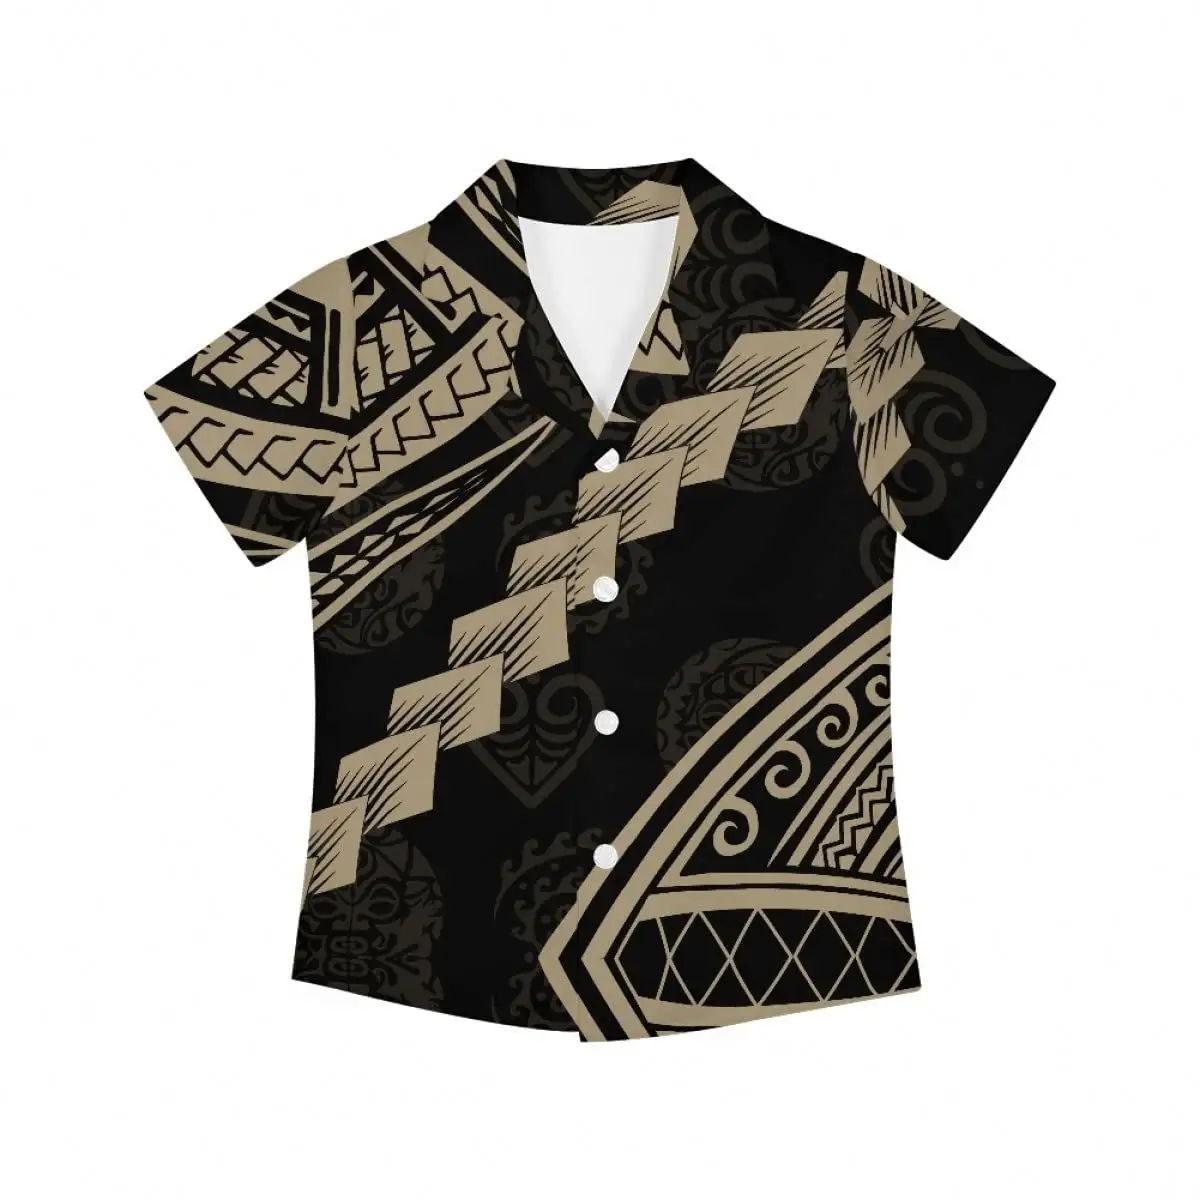 Polinesiano originale Totem americano Samoan Kids camicia hawaiana moda top Custom spiaggia spiaggia Button-Down camicia a manica corta